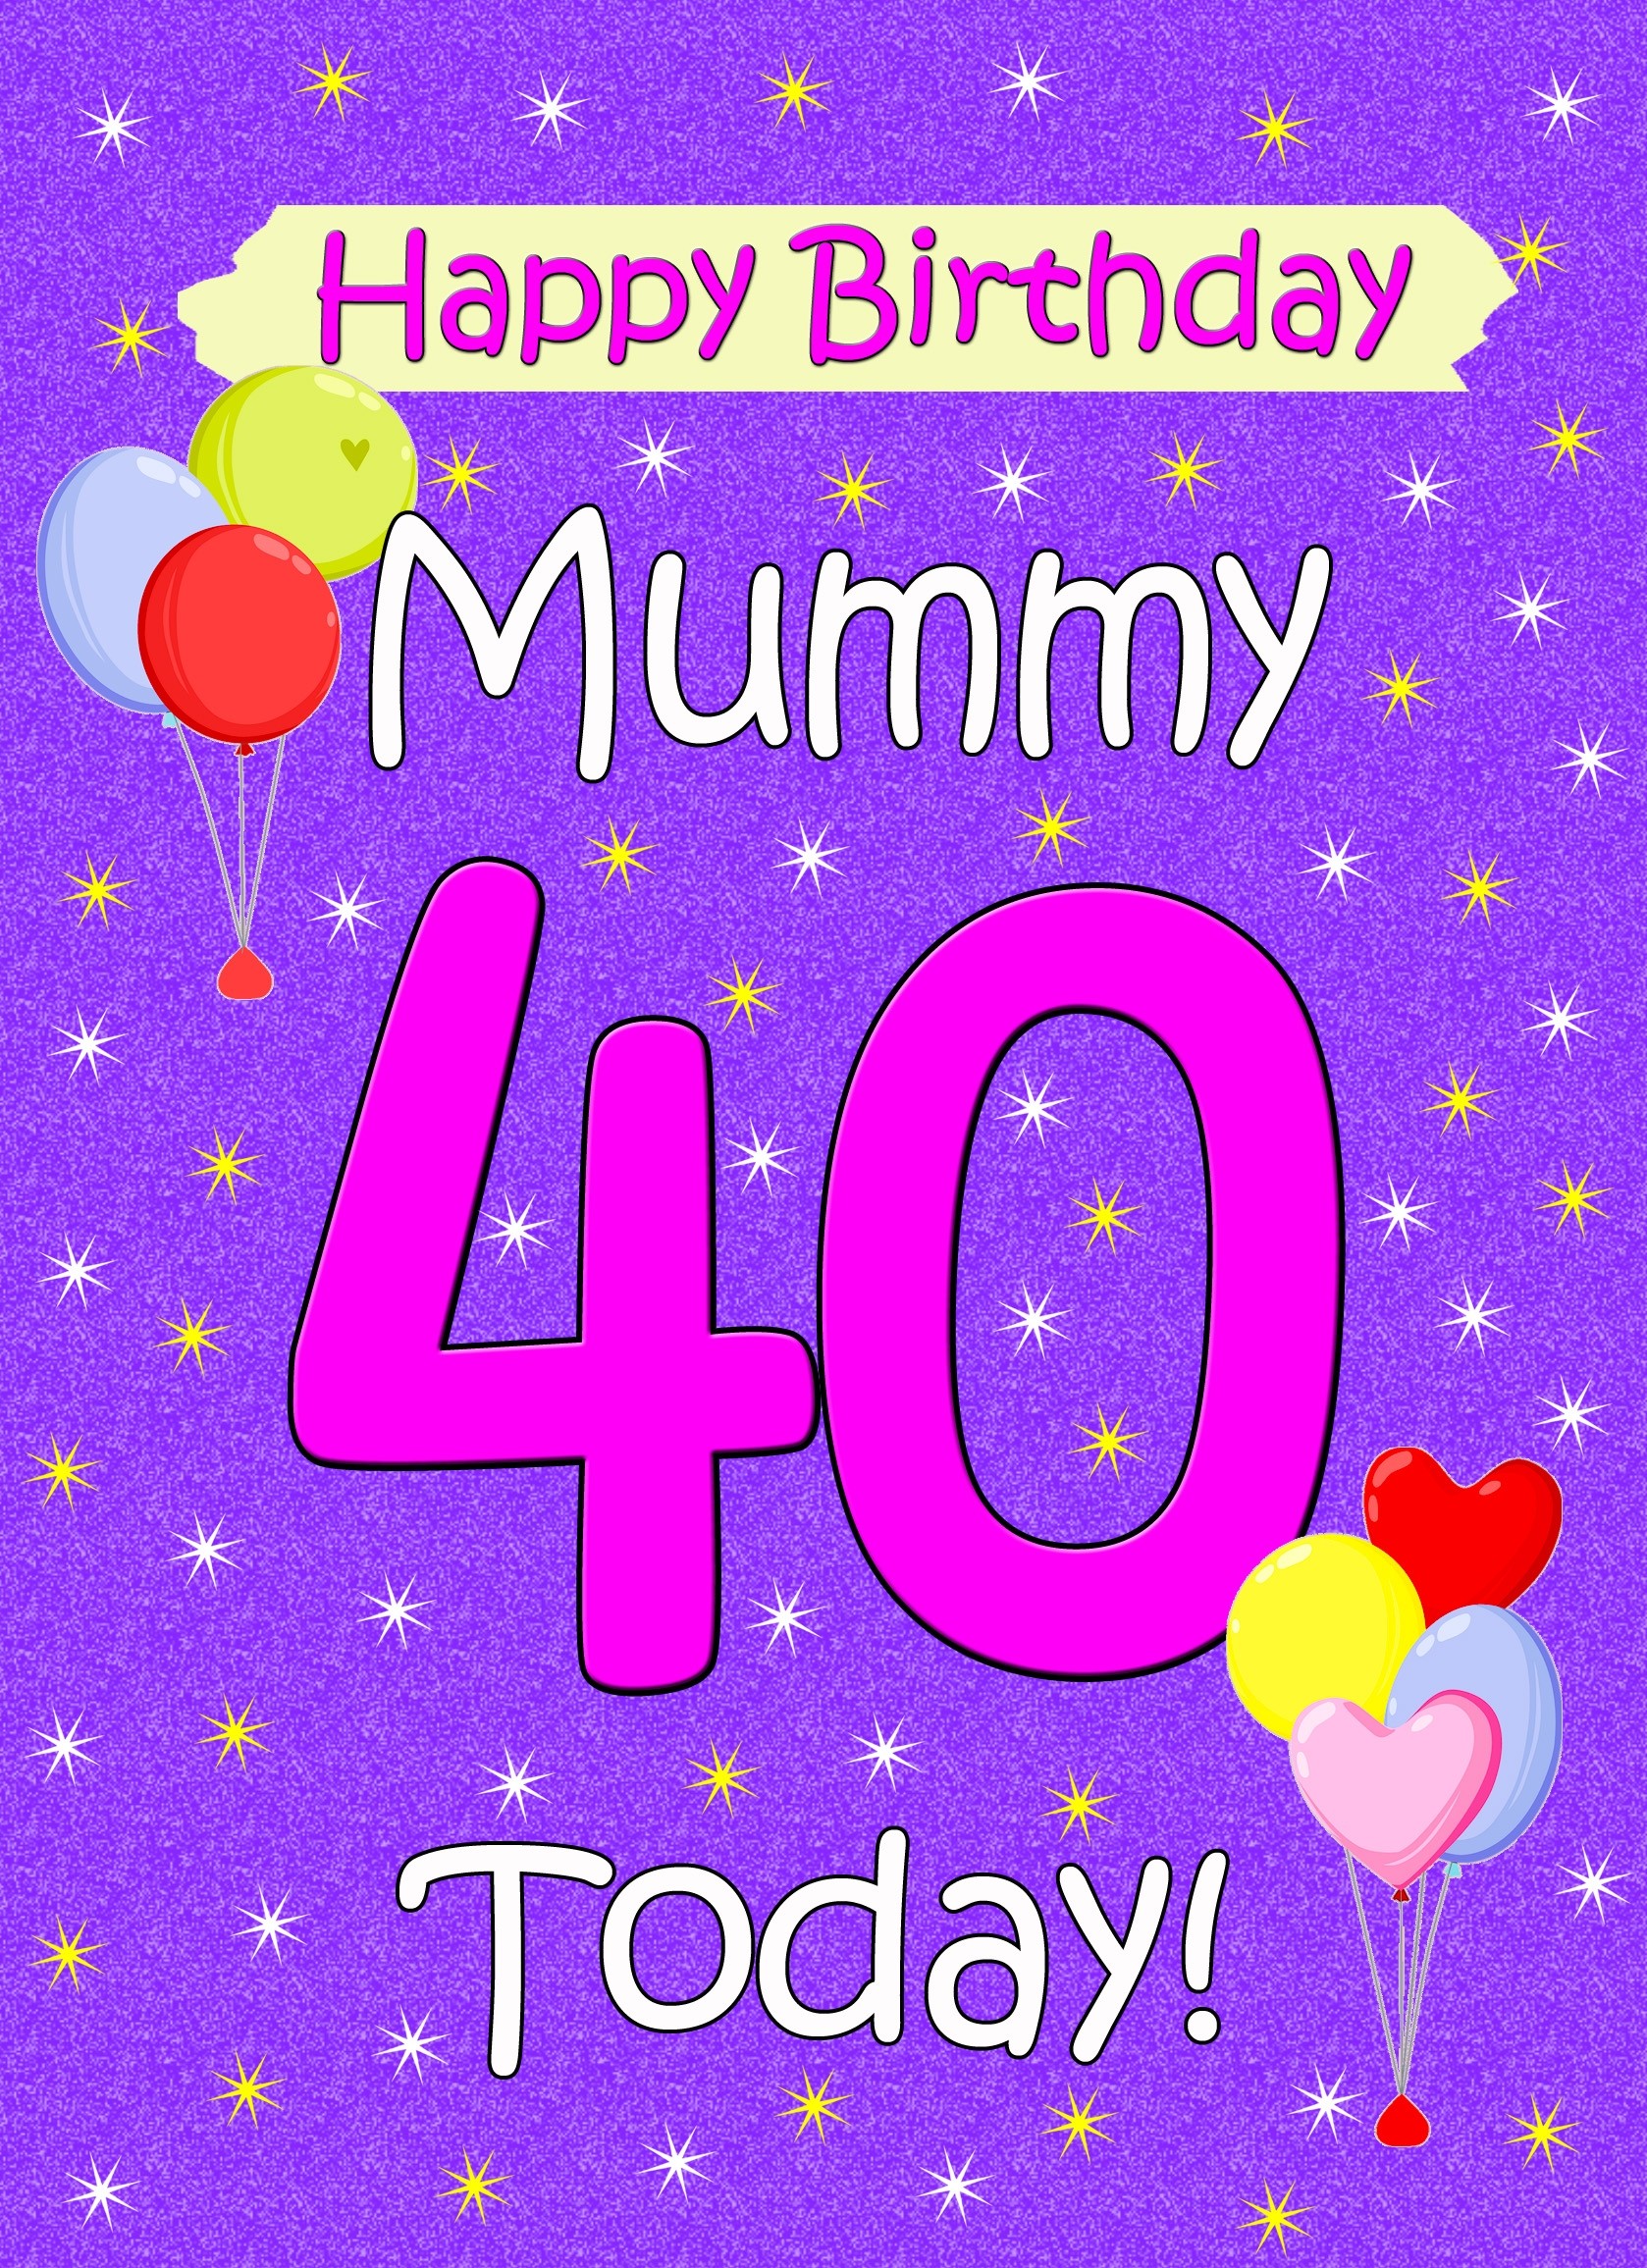 Mummy 40th Birthday Card (Lilac)